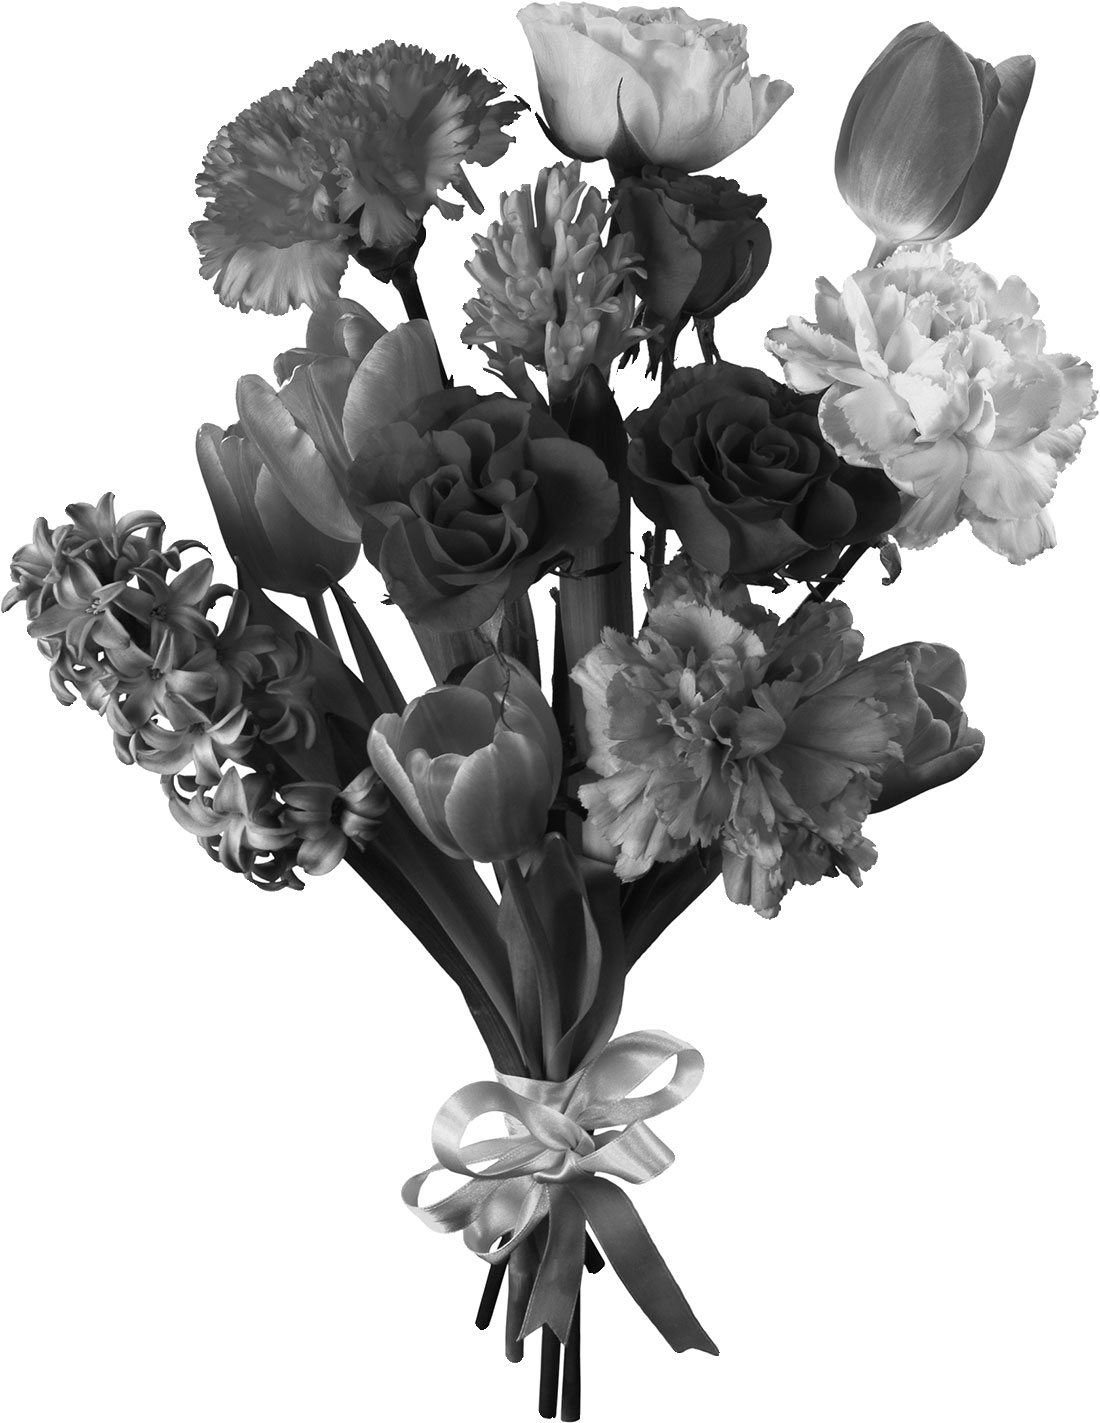 リアルな花のイラスト フリー素材 白黒 モノクロno 2197 白黒 花束 リボン